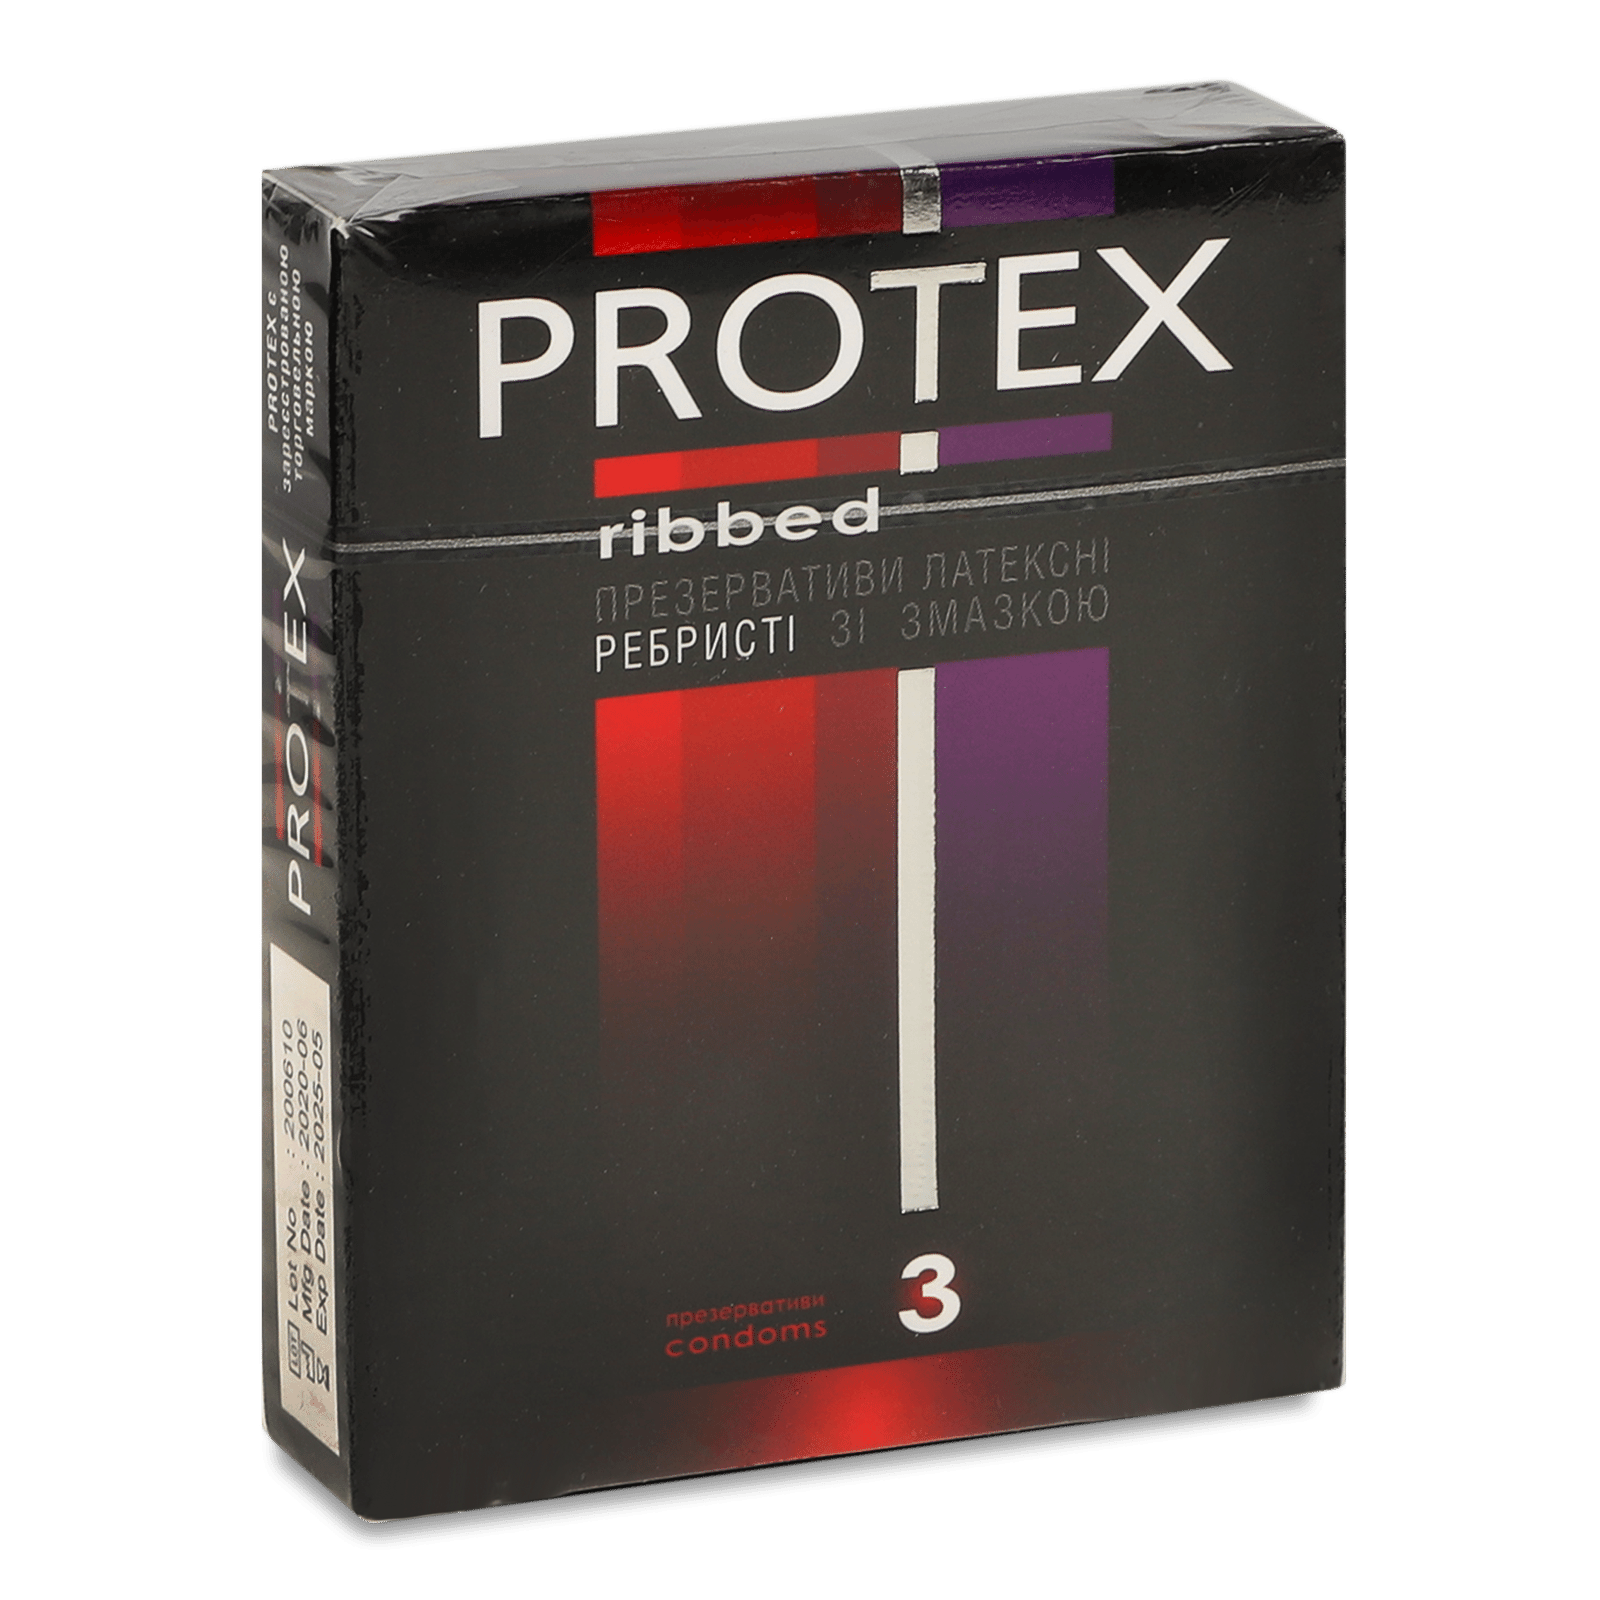 Презервативи Protex ребристі зі змазкою - 1